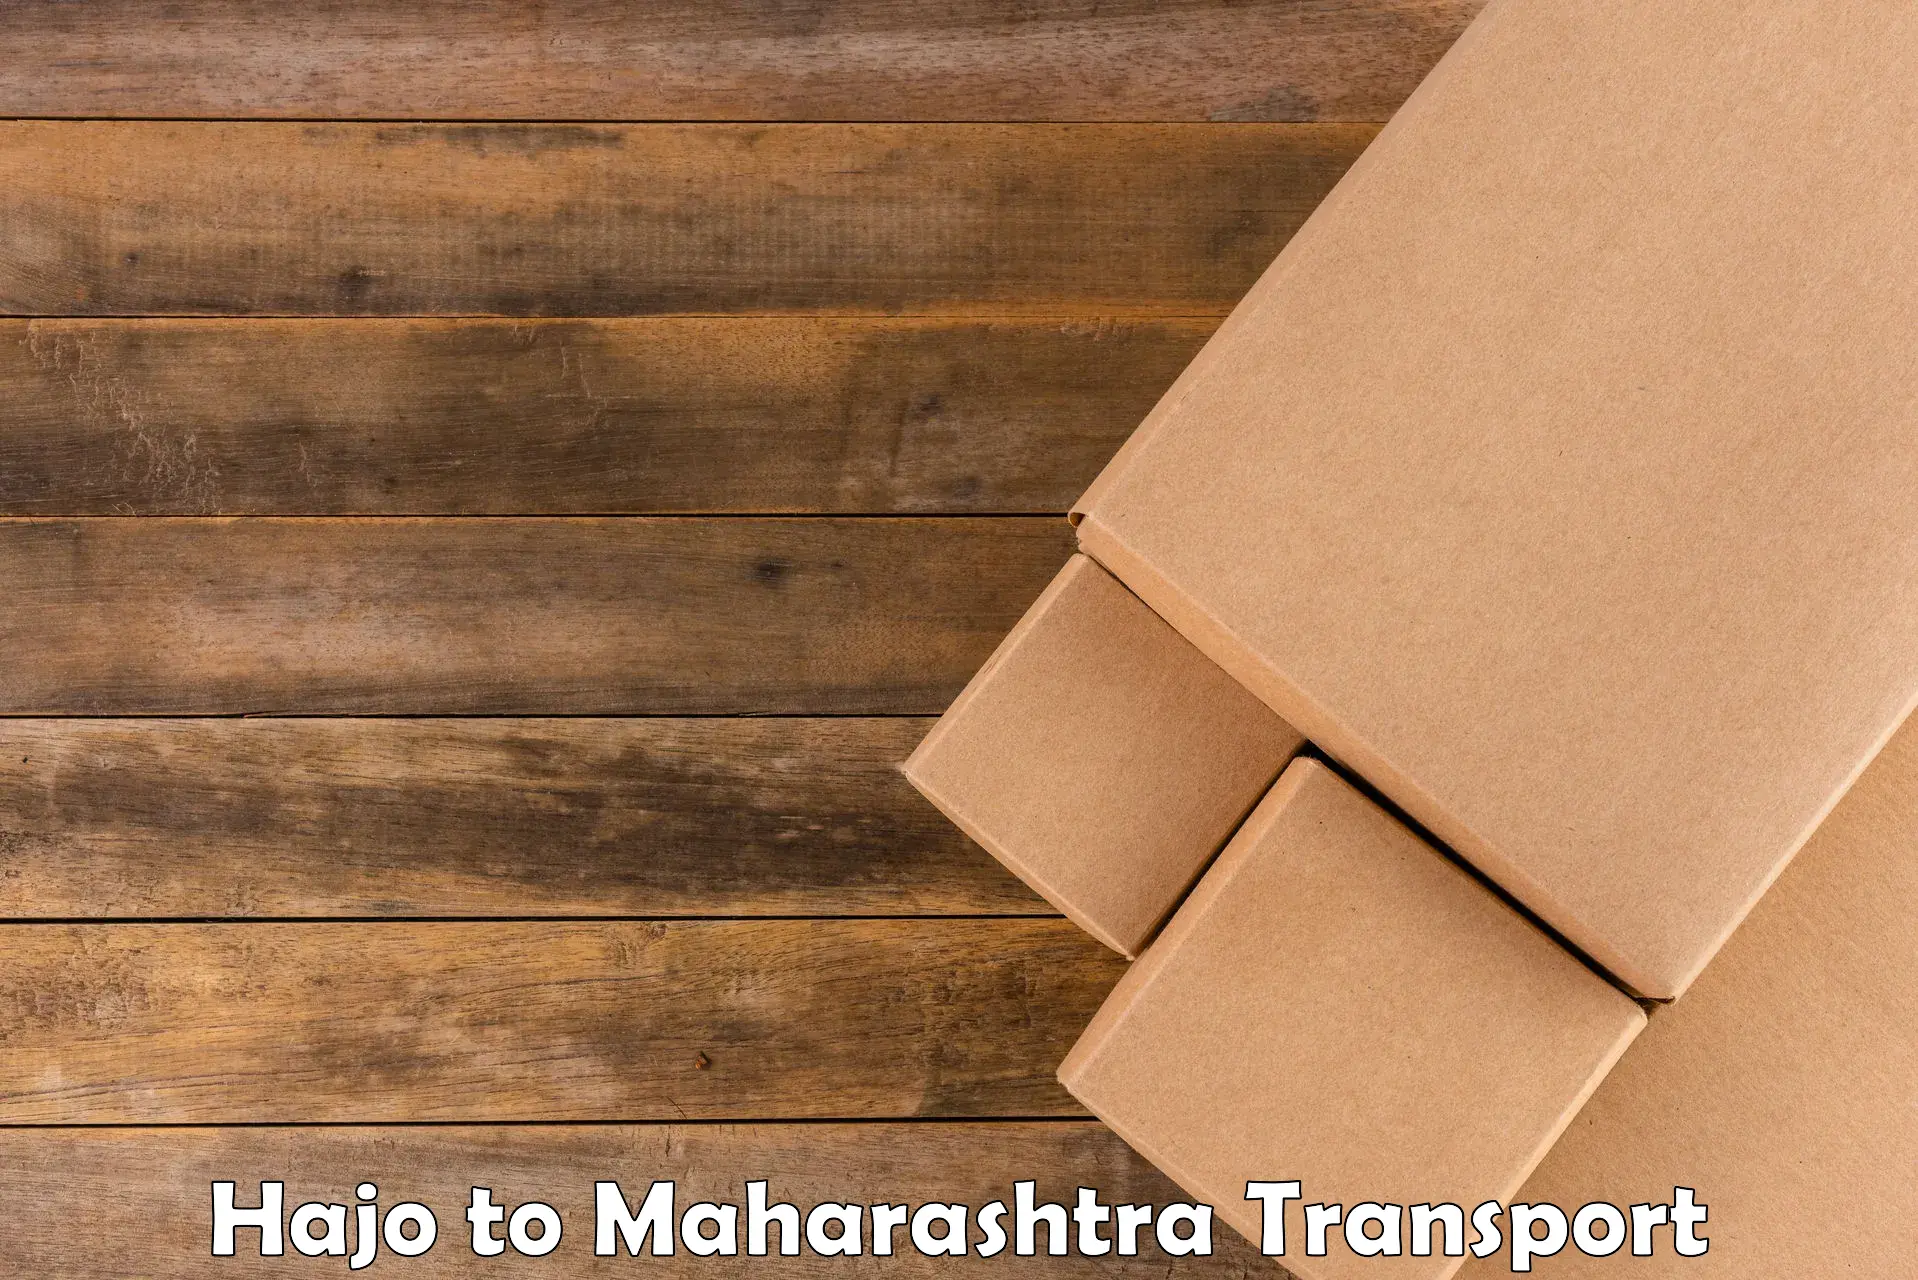 All India transport service Hajo to Kopargaon